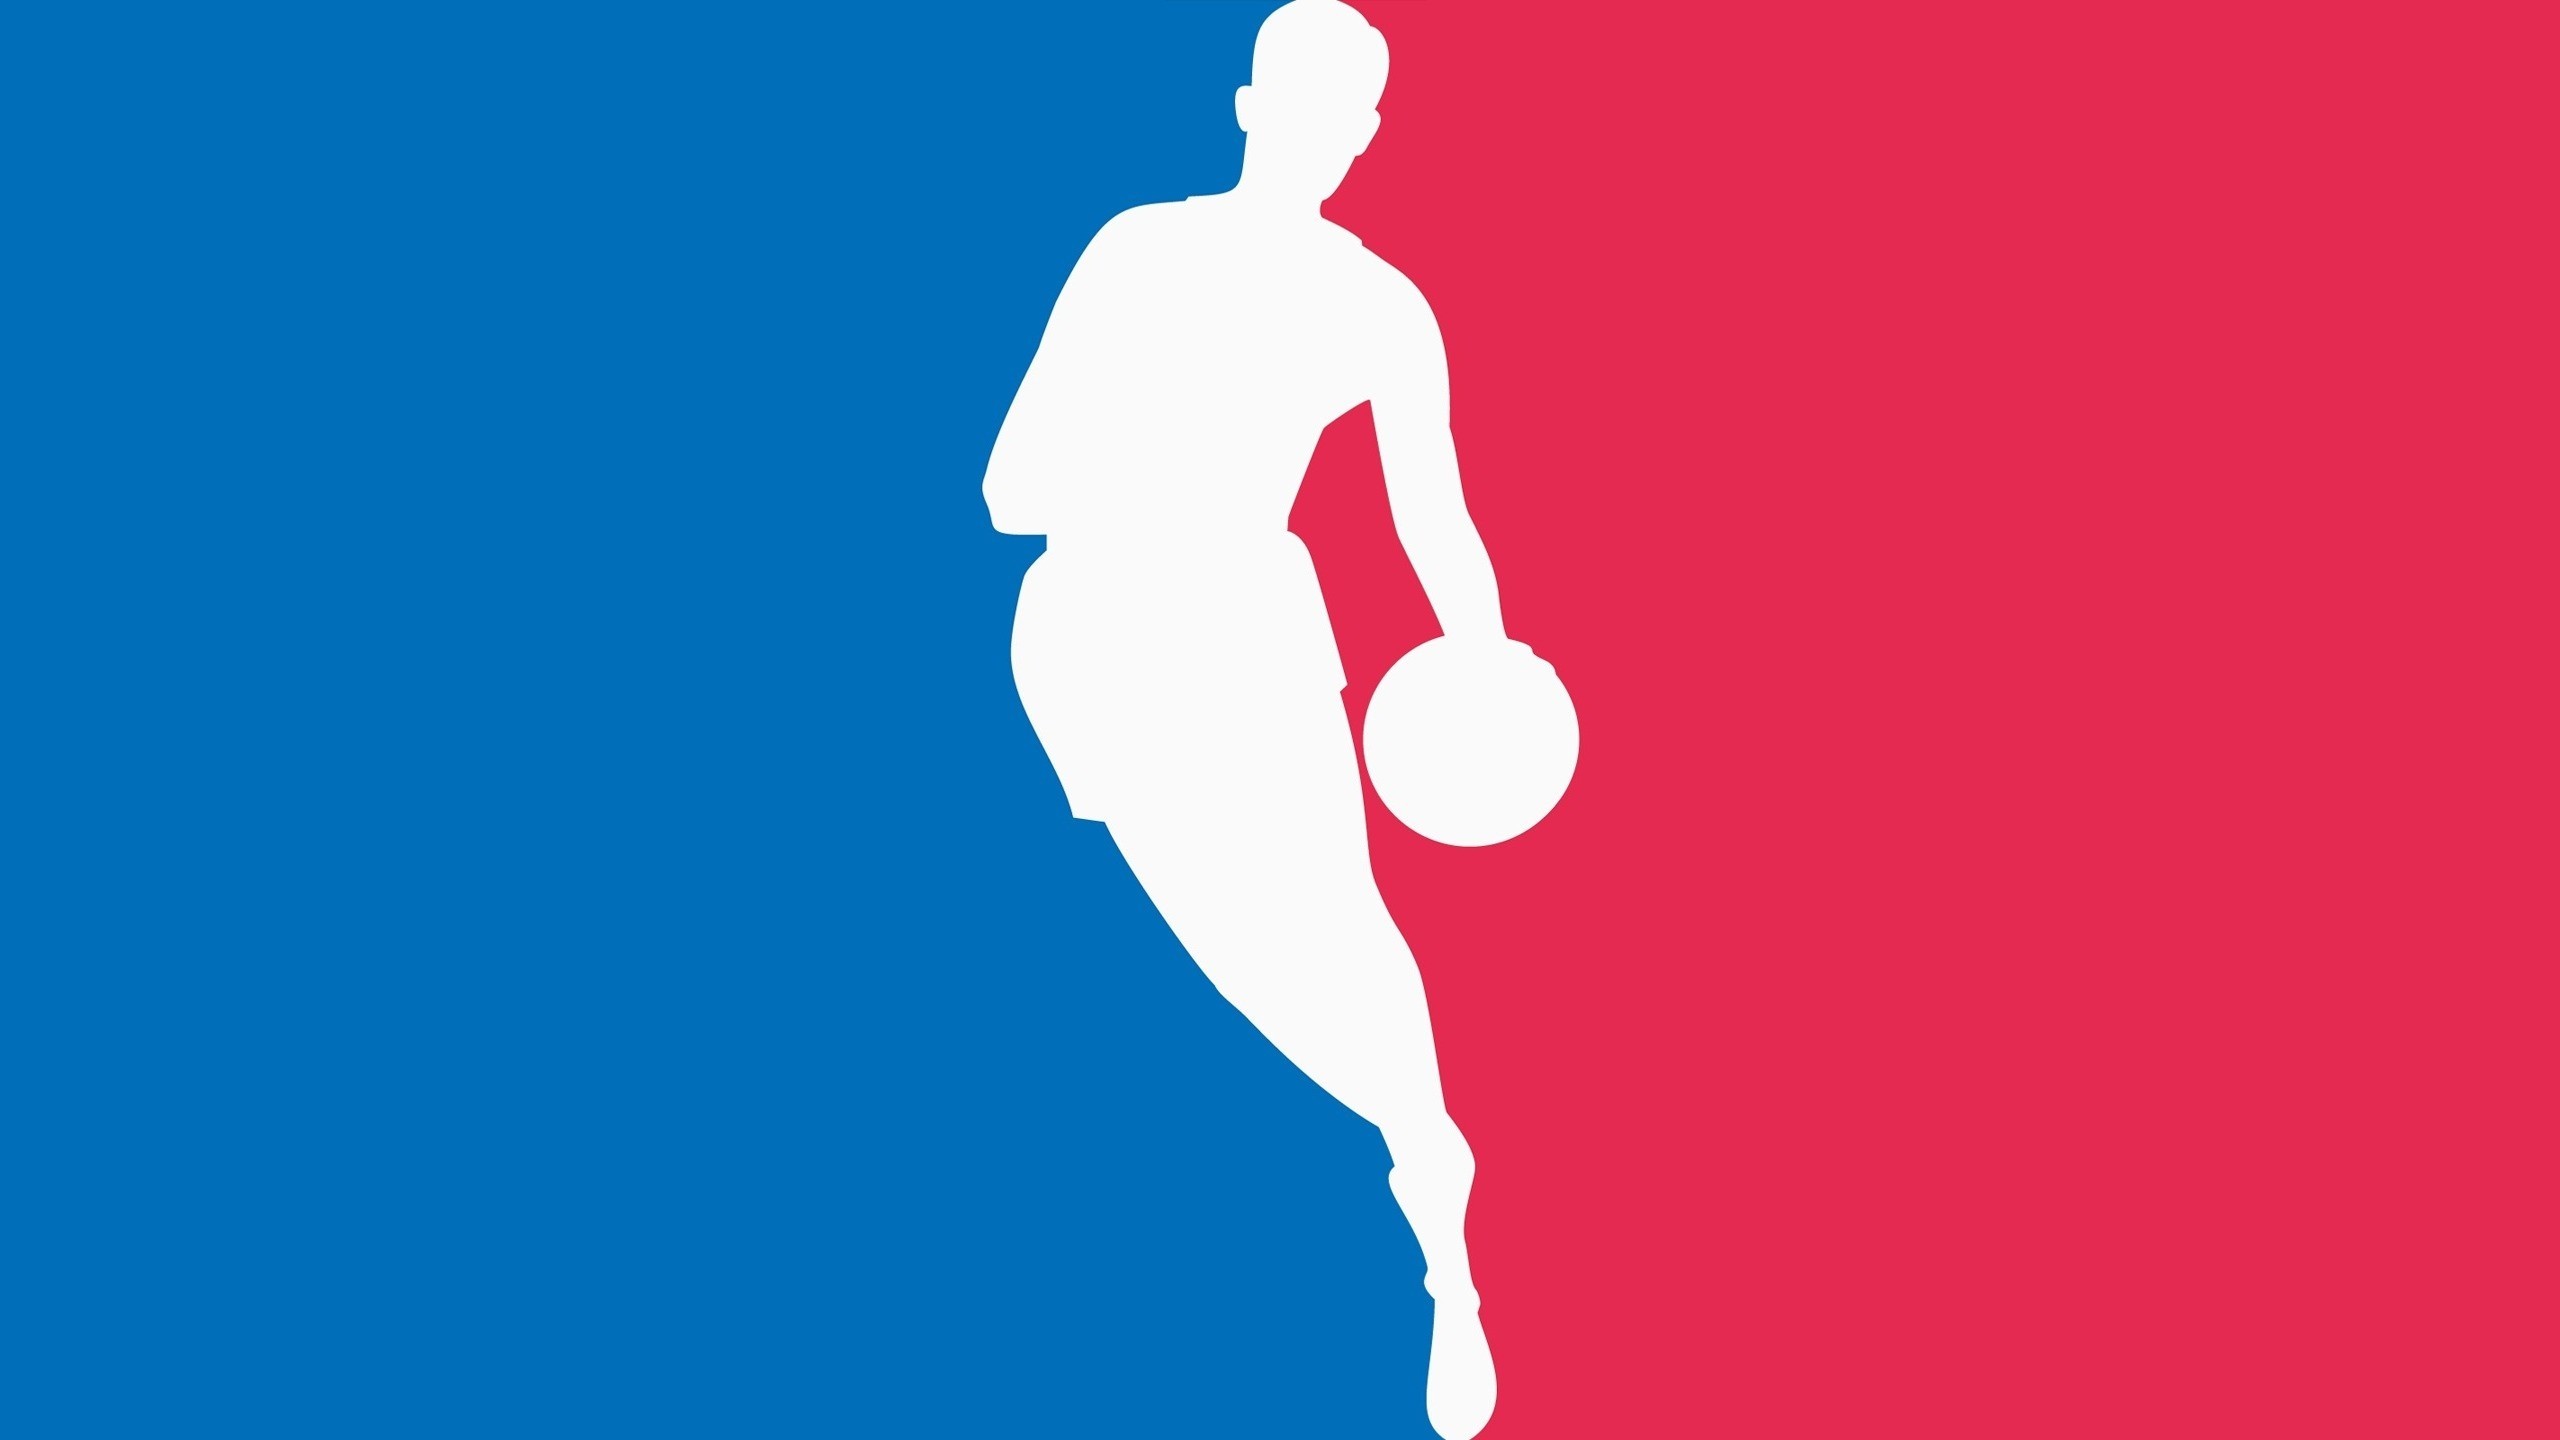 بسکتبال NBA - کنفرانس غرب - کنفرانس شرق - بوستون سلتیکس - دالاس ماوریکس - دمارکوس کازینز - آنتونی دیویس - دمار دروزن